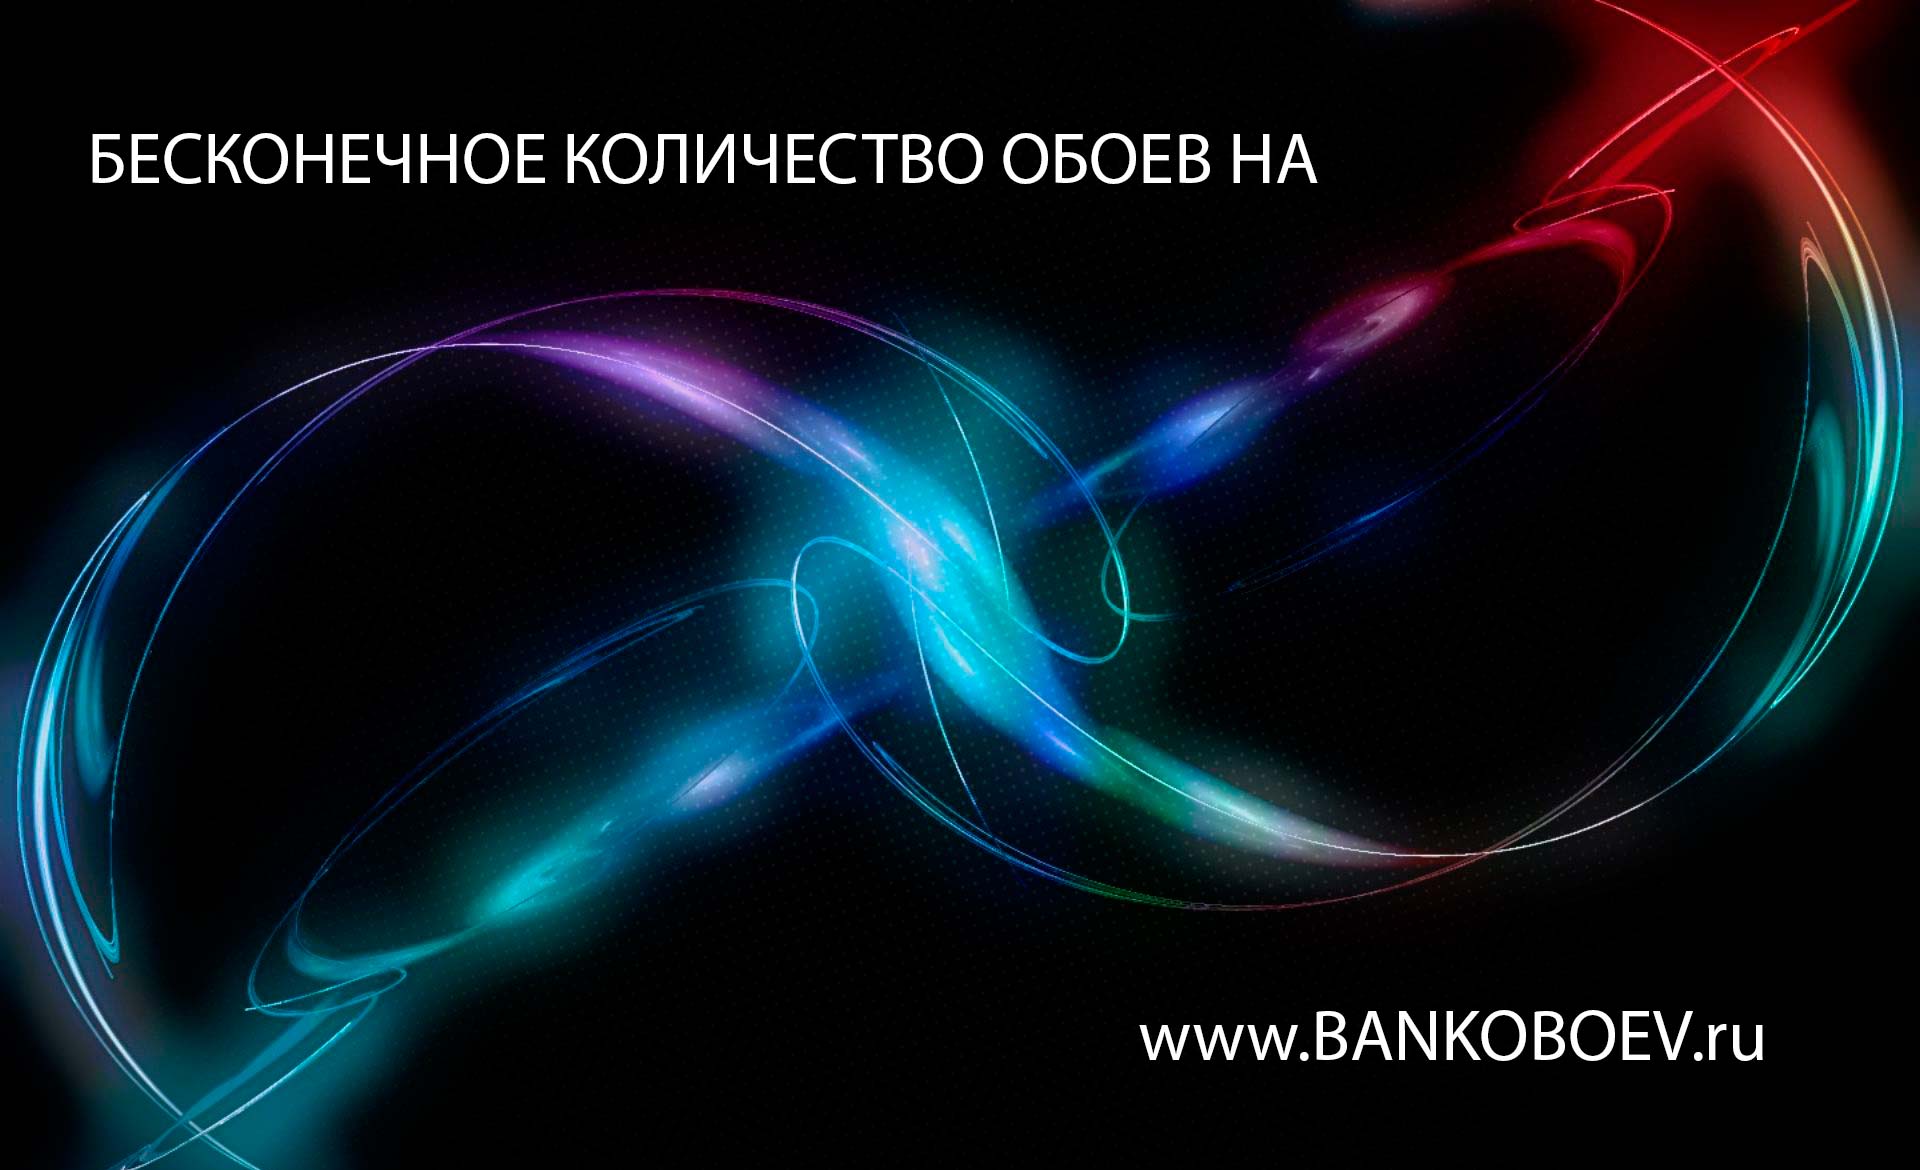 Bankoboev Ru Image Mta1mty2 Jpg